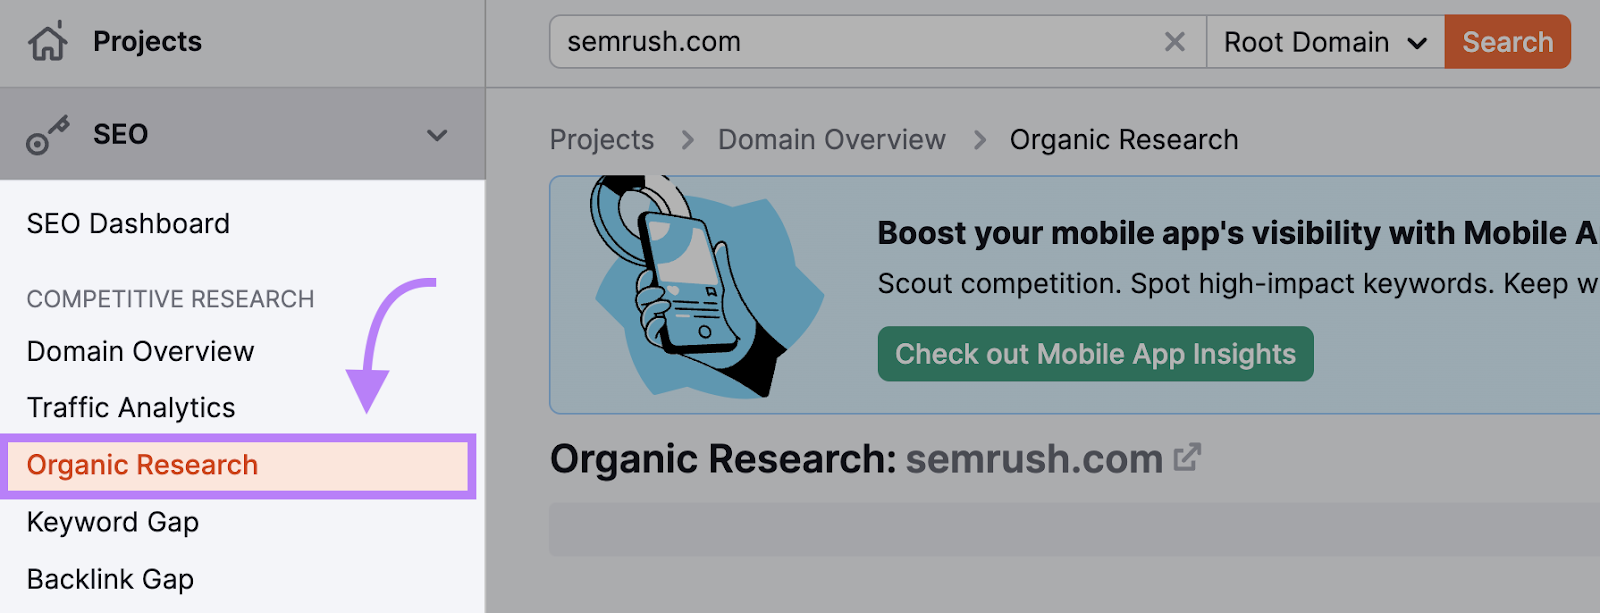 Navigating to "Organic Research" in Semrush.com’s left-hand menu